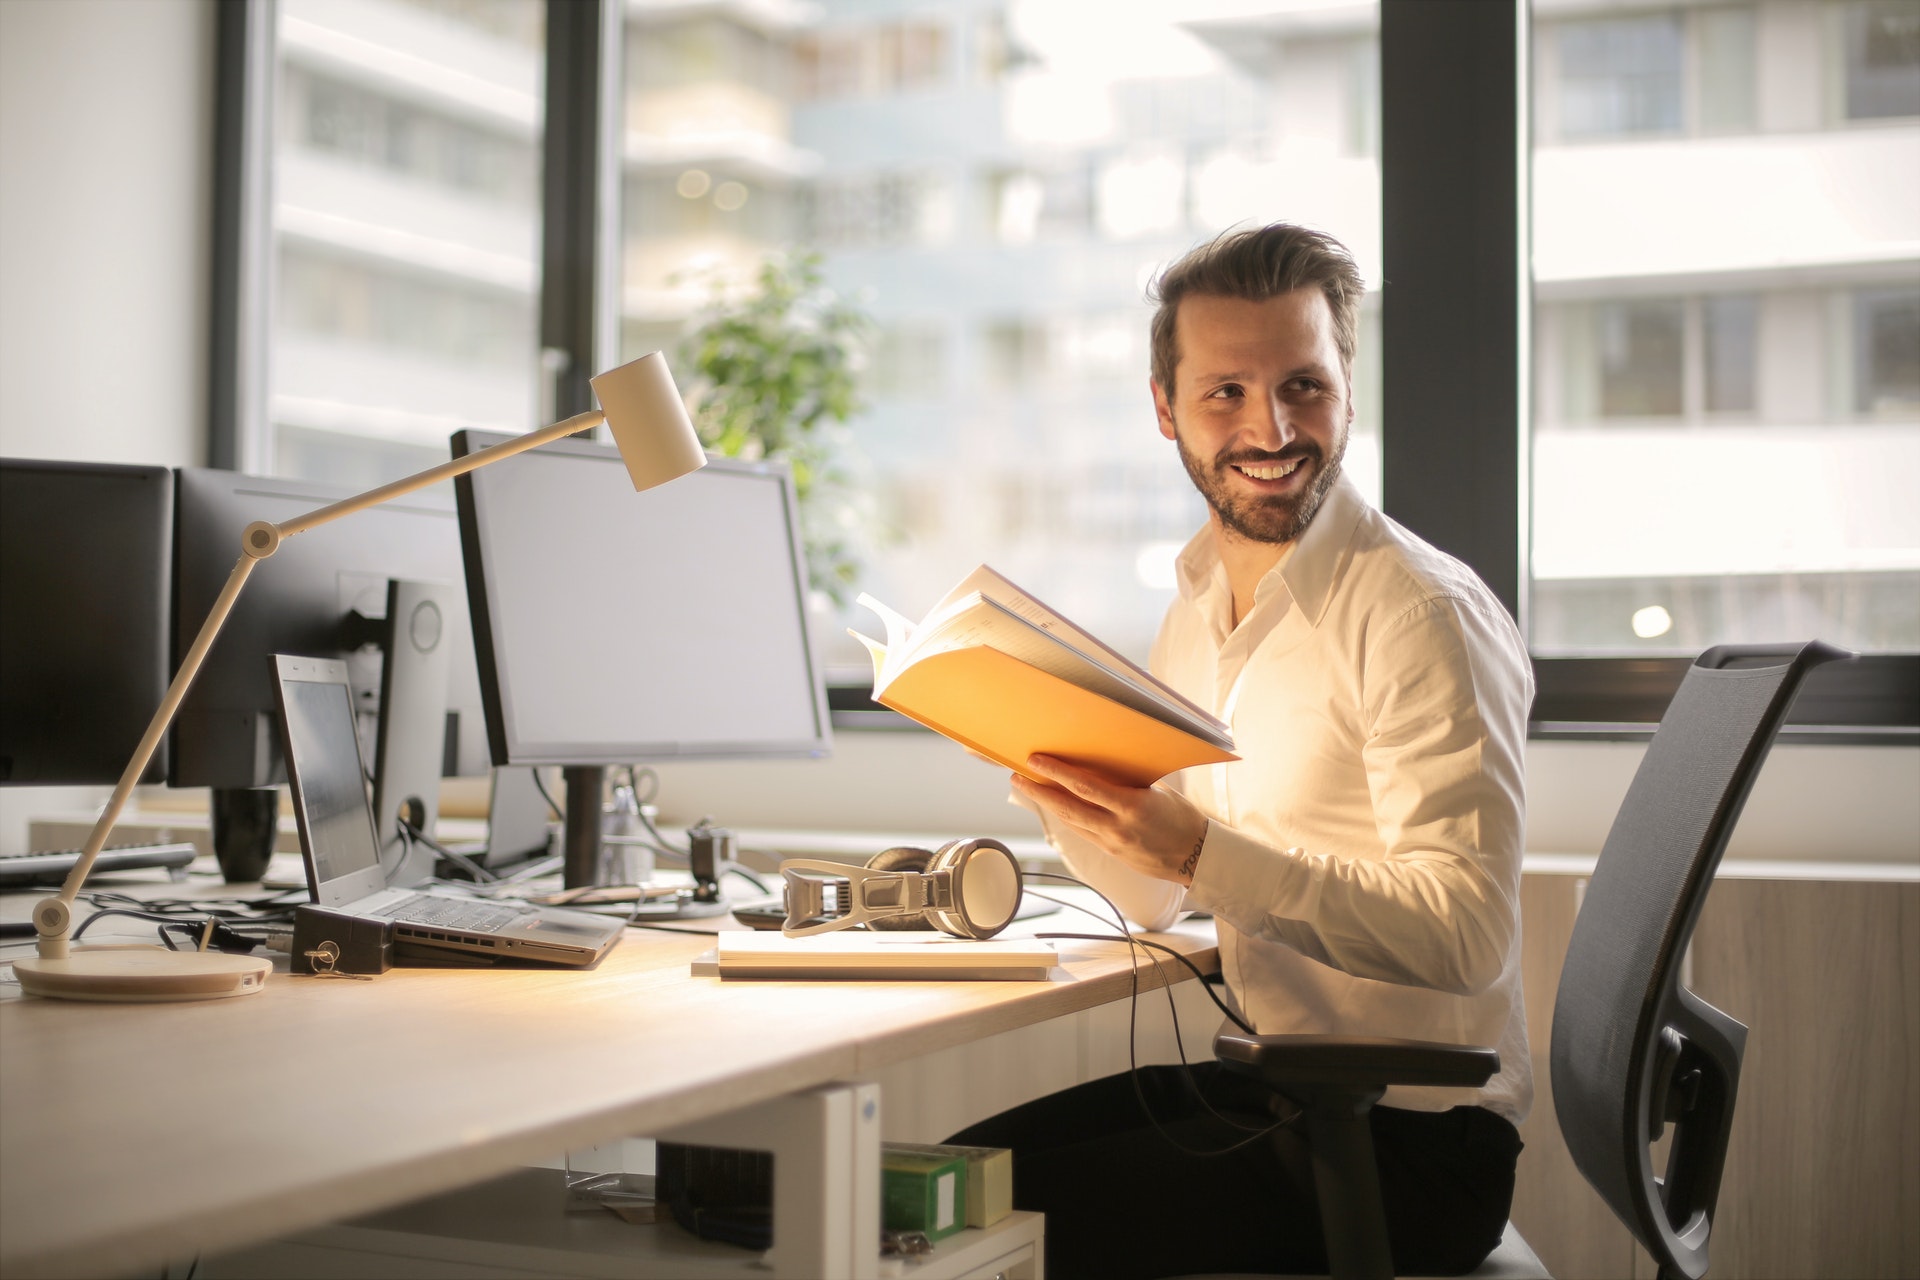 Imagem de um empresário em uma mesa de escritório com papeis e um computador. Ele está sorrindo e segurando uma pasta. Imagem ilustrativa texto expandir seu negócio.